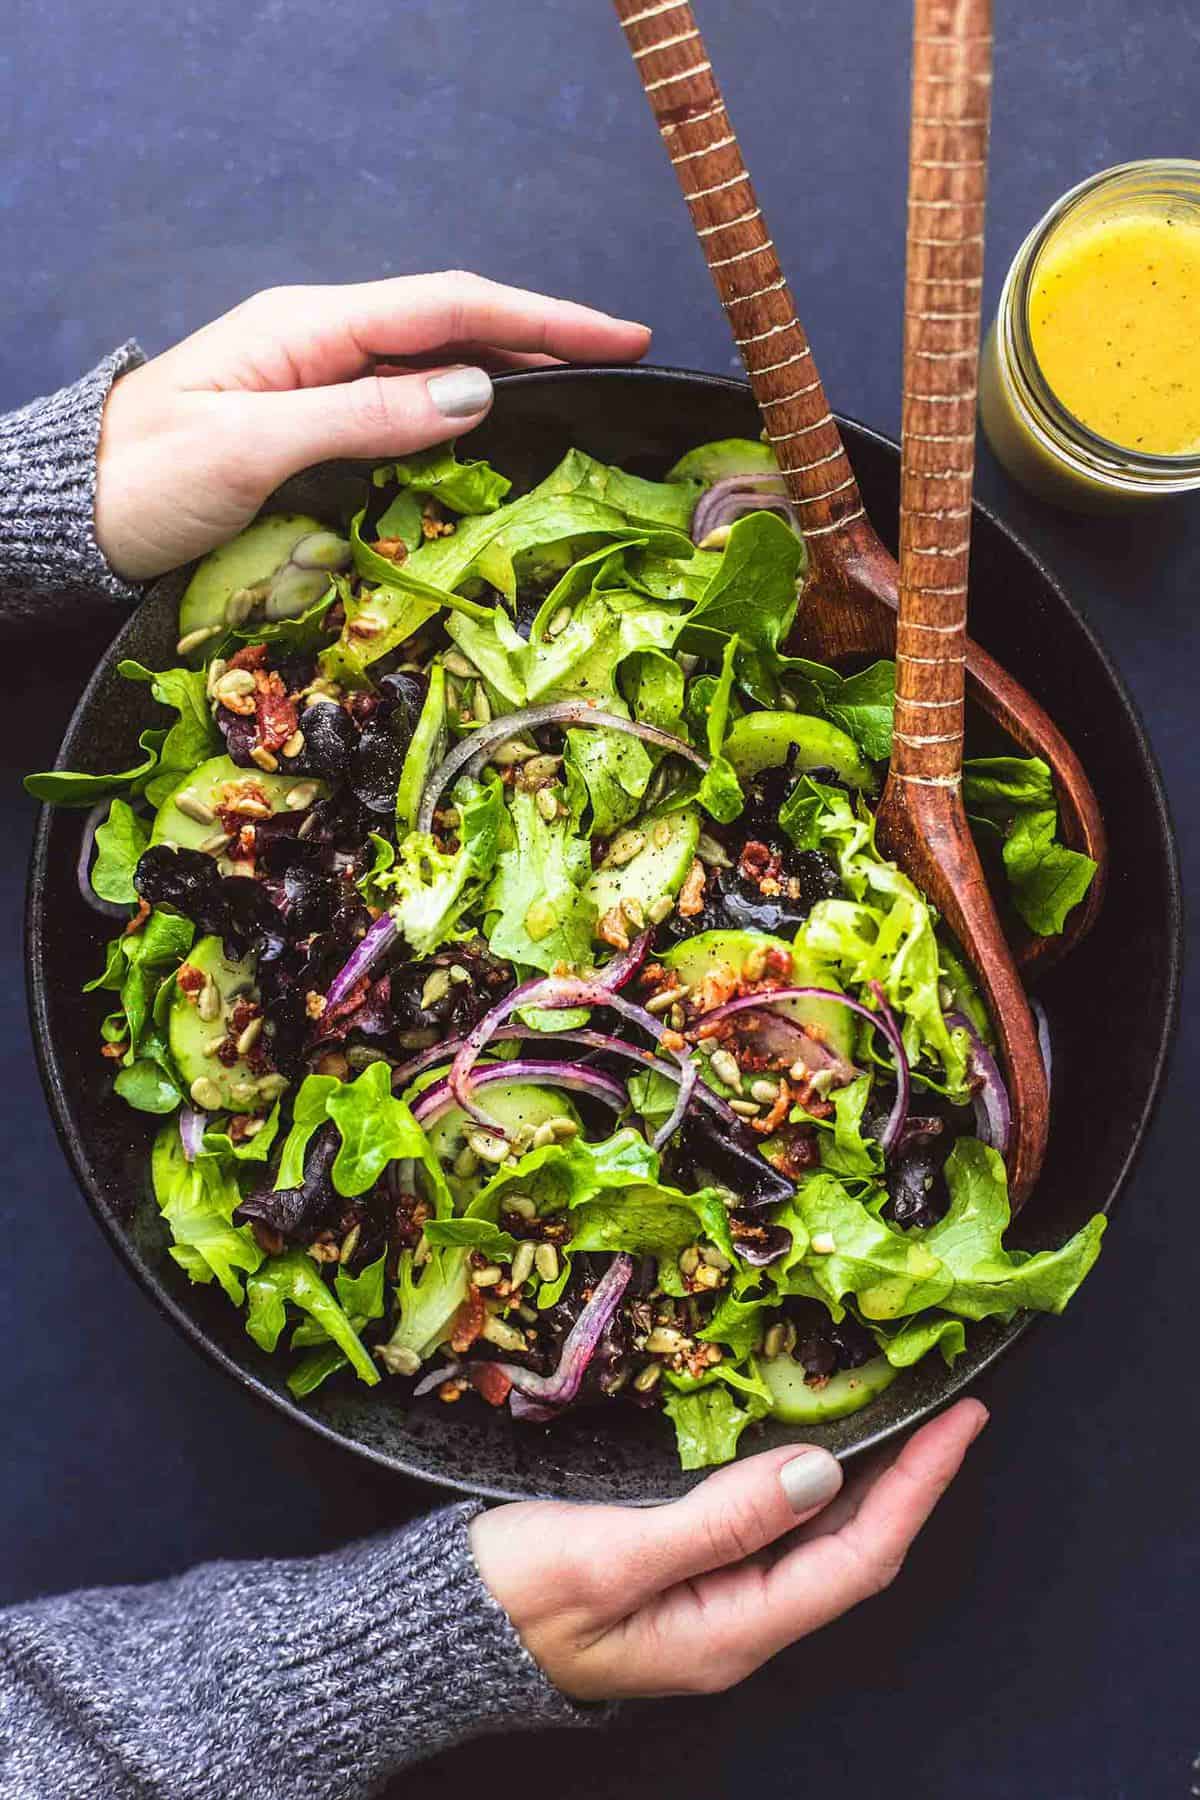 https://www.lecremedelacrumb.com/wp-content/uploads/2019/01/best-simple-green-salad-1-2.jpg